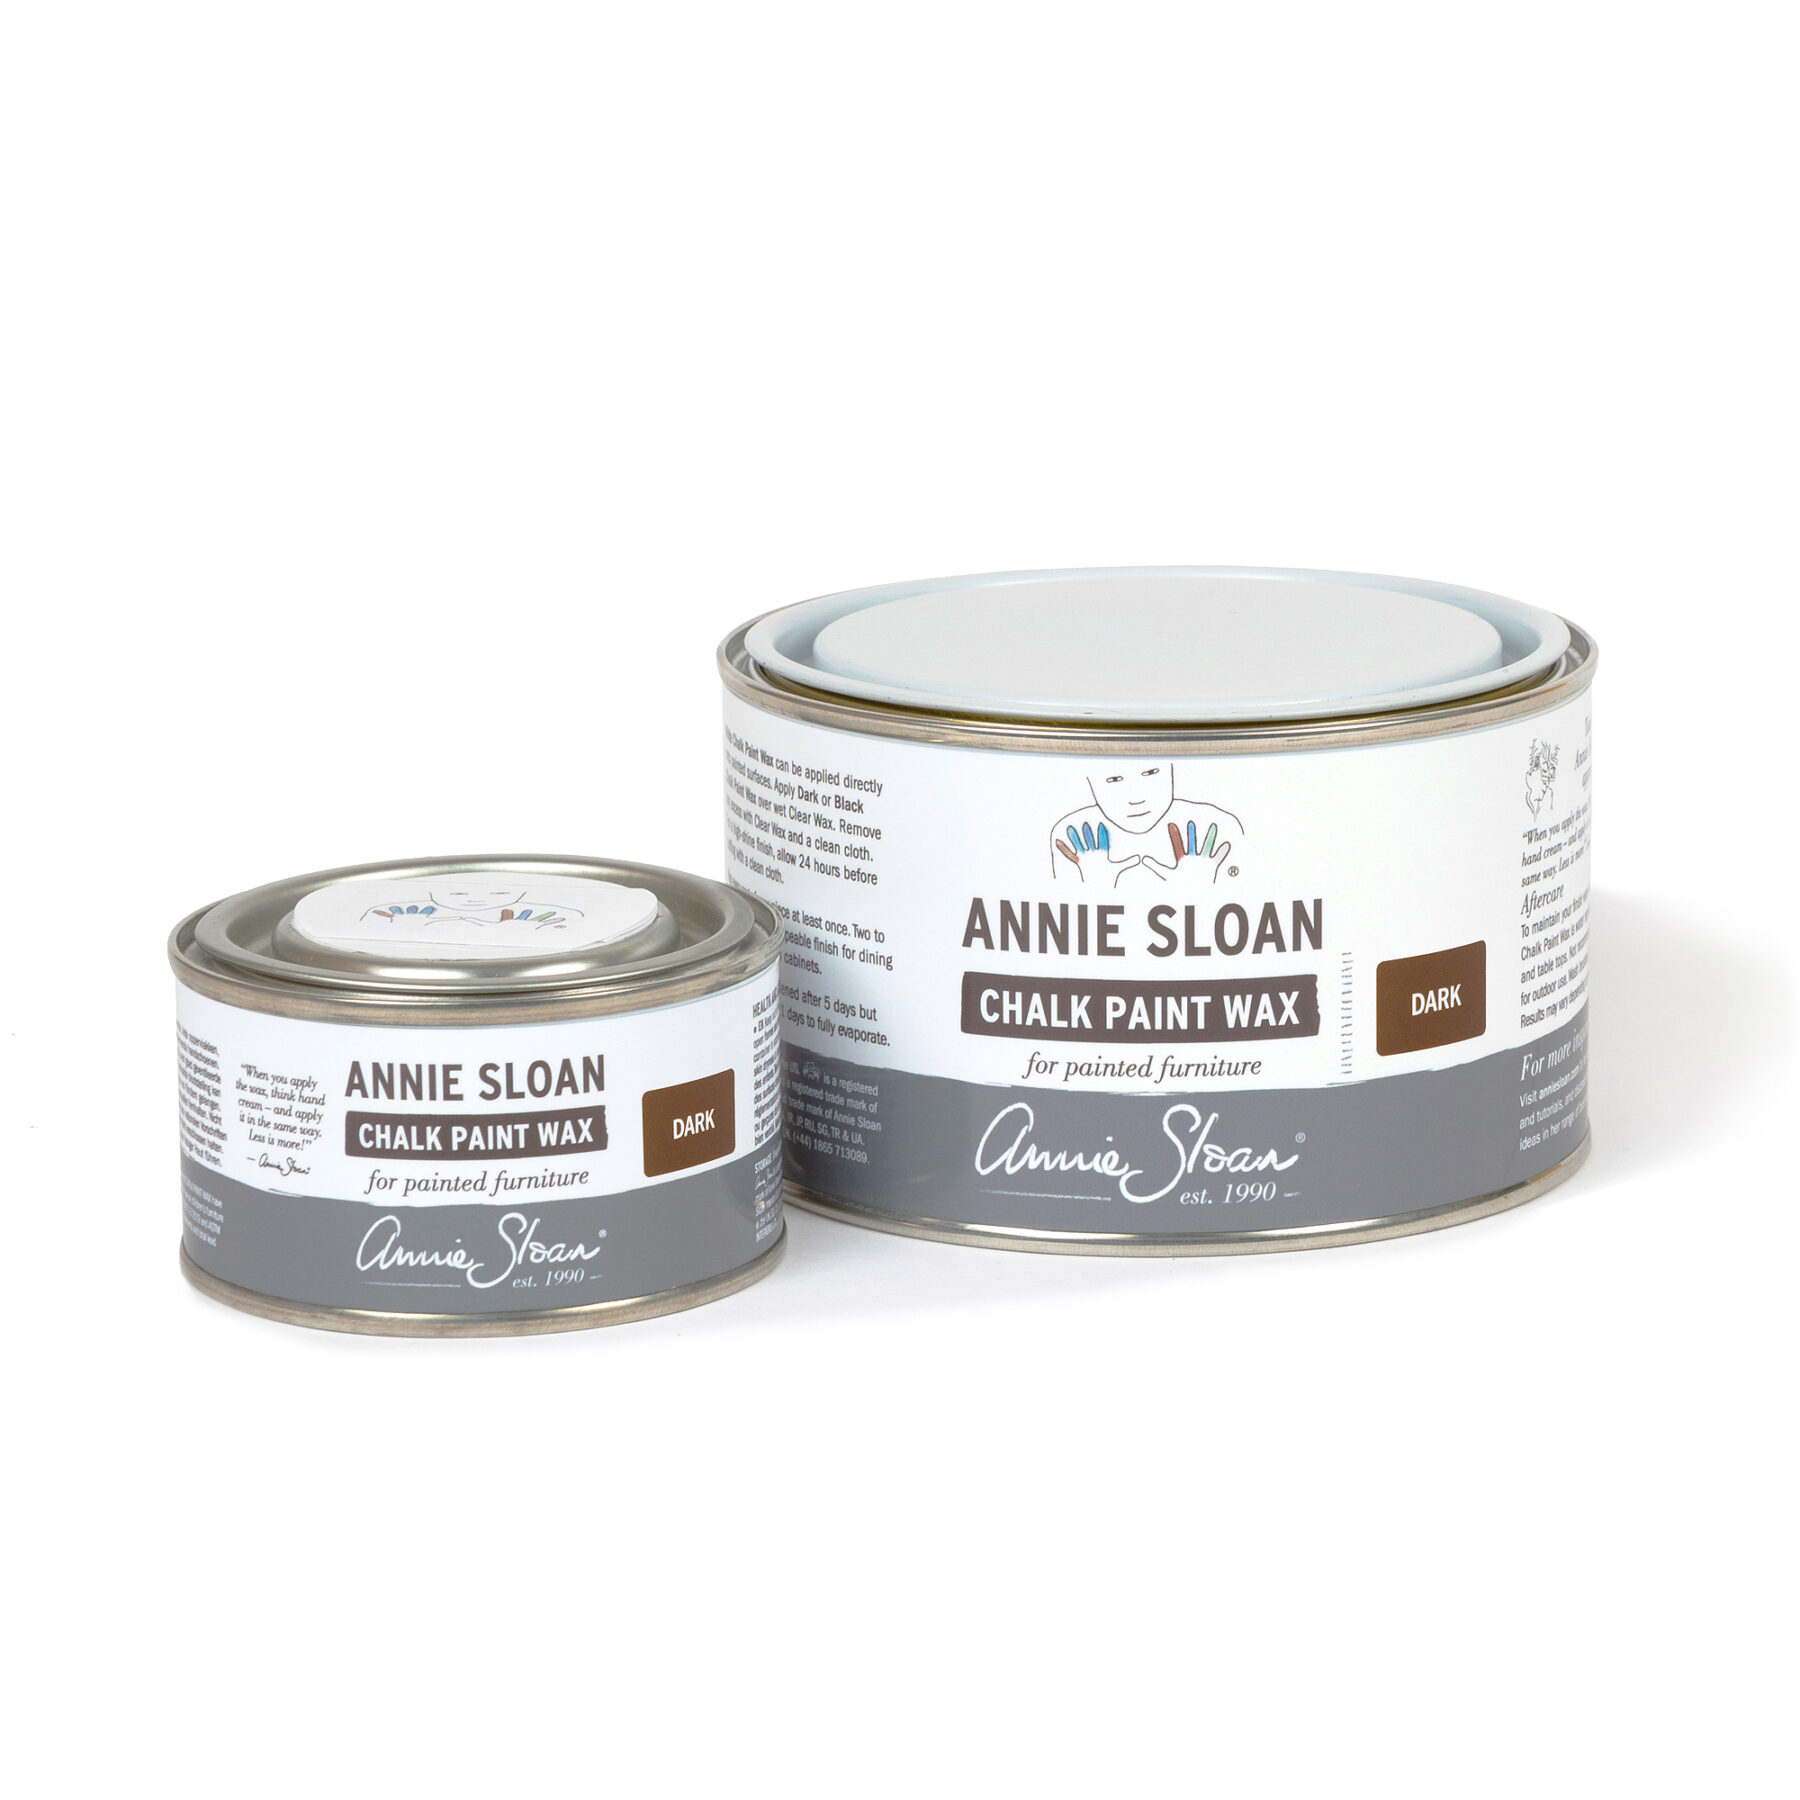 Wachs Dunkel (Dark Wax) - Annie Sloan 500 ml von Annie Sloan